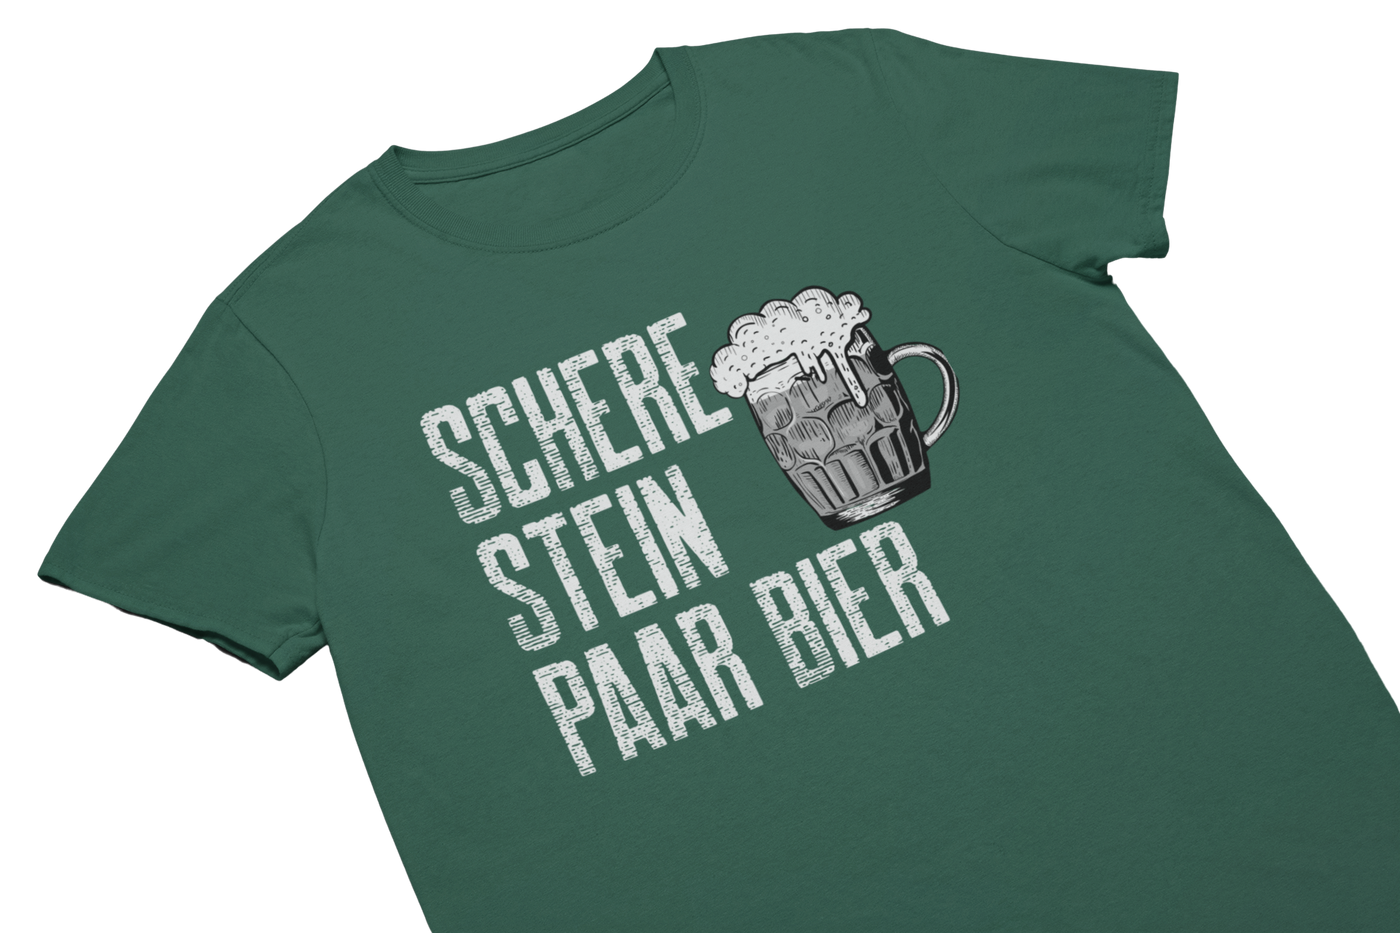 SCHERE STEIN PAAR BIER - T-Shirt Gruen